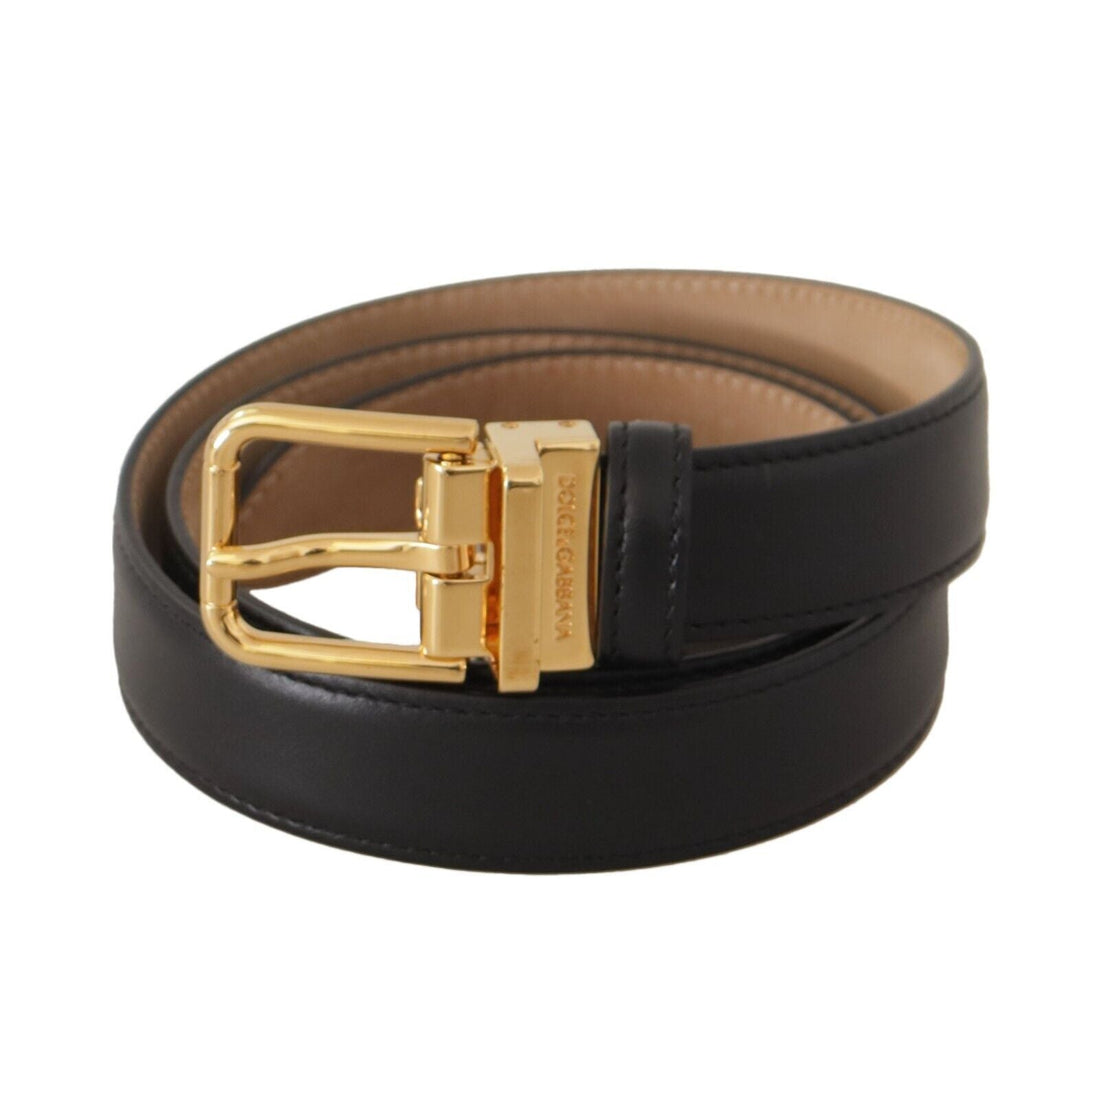 Dolce & Gabbana Elegant Black Leather Belt with Engraved Metal Buckle